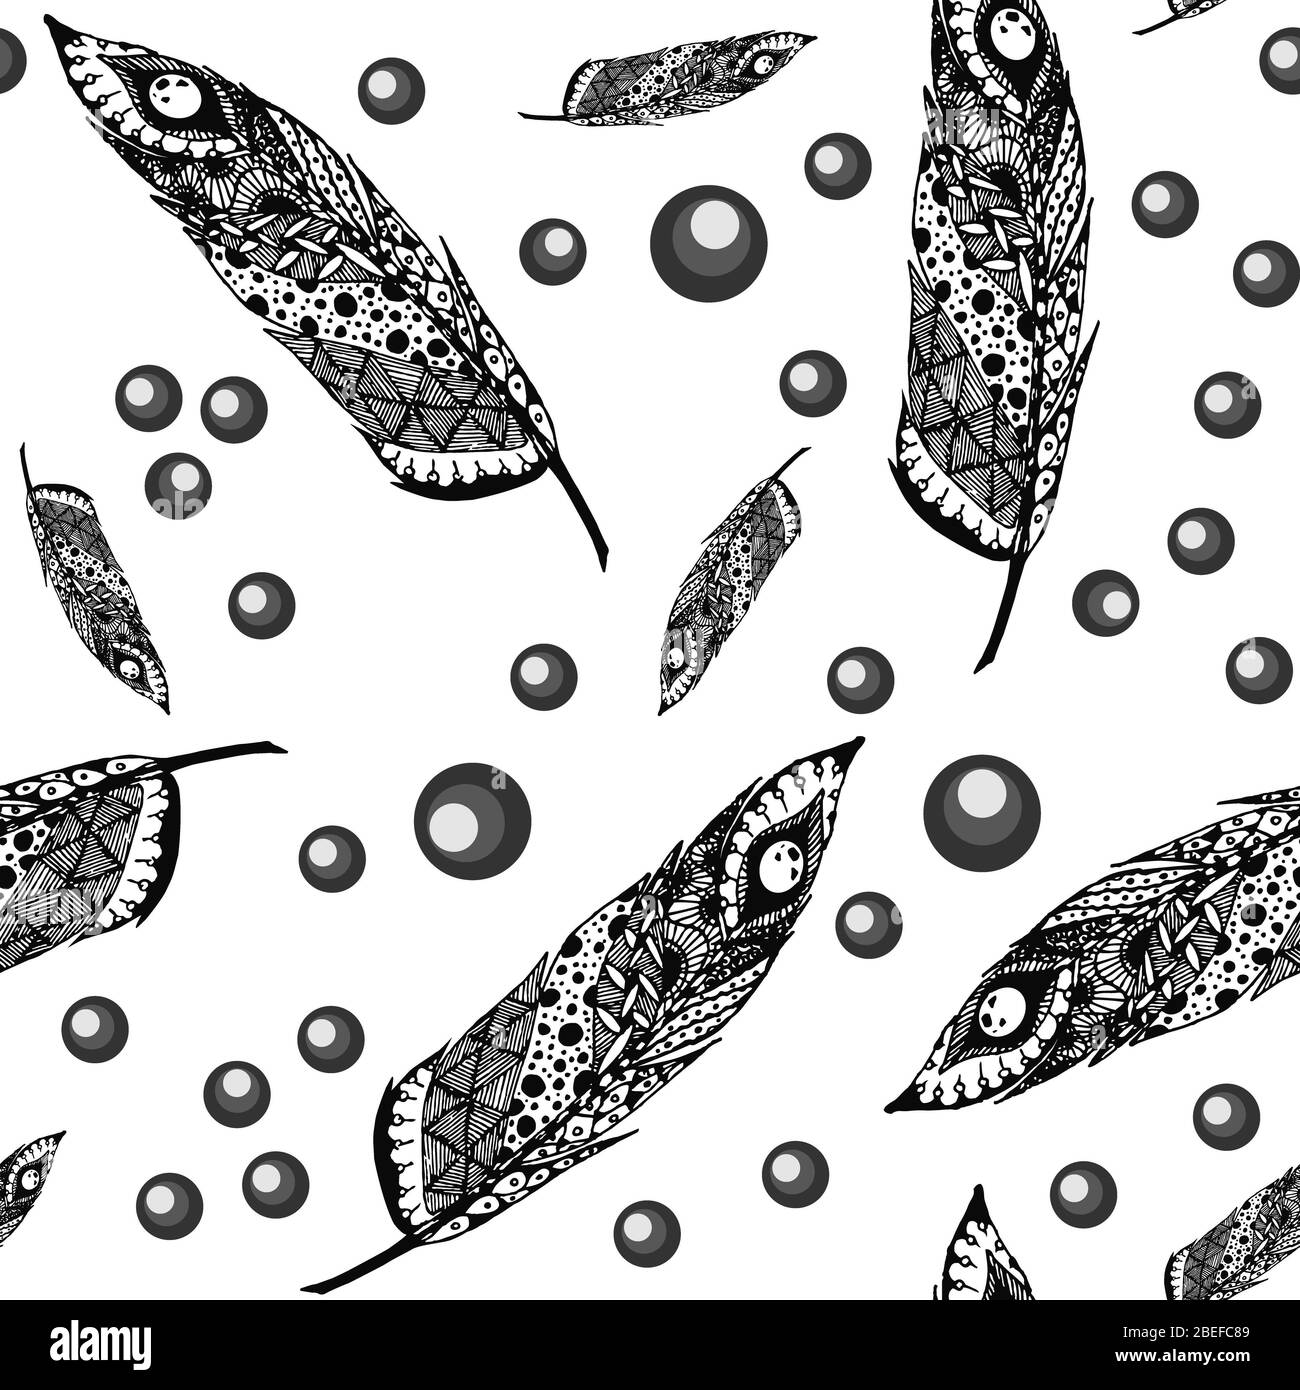 Piuma d'alva disegnata a mano isolata dallo sfondo. Illustrazione in bianco e nero con ornamenti diversi. Foto Stock